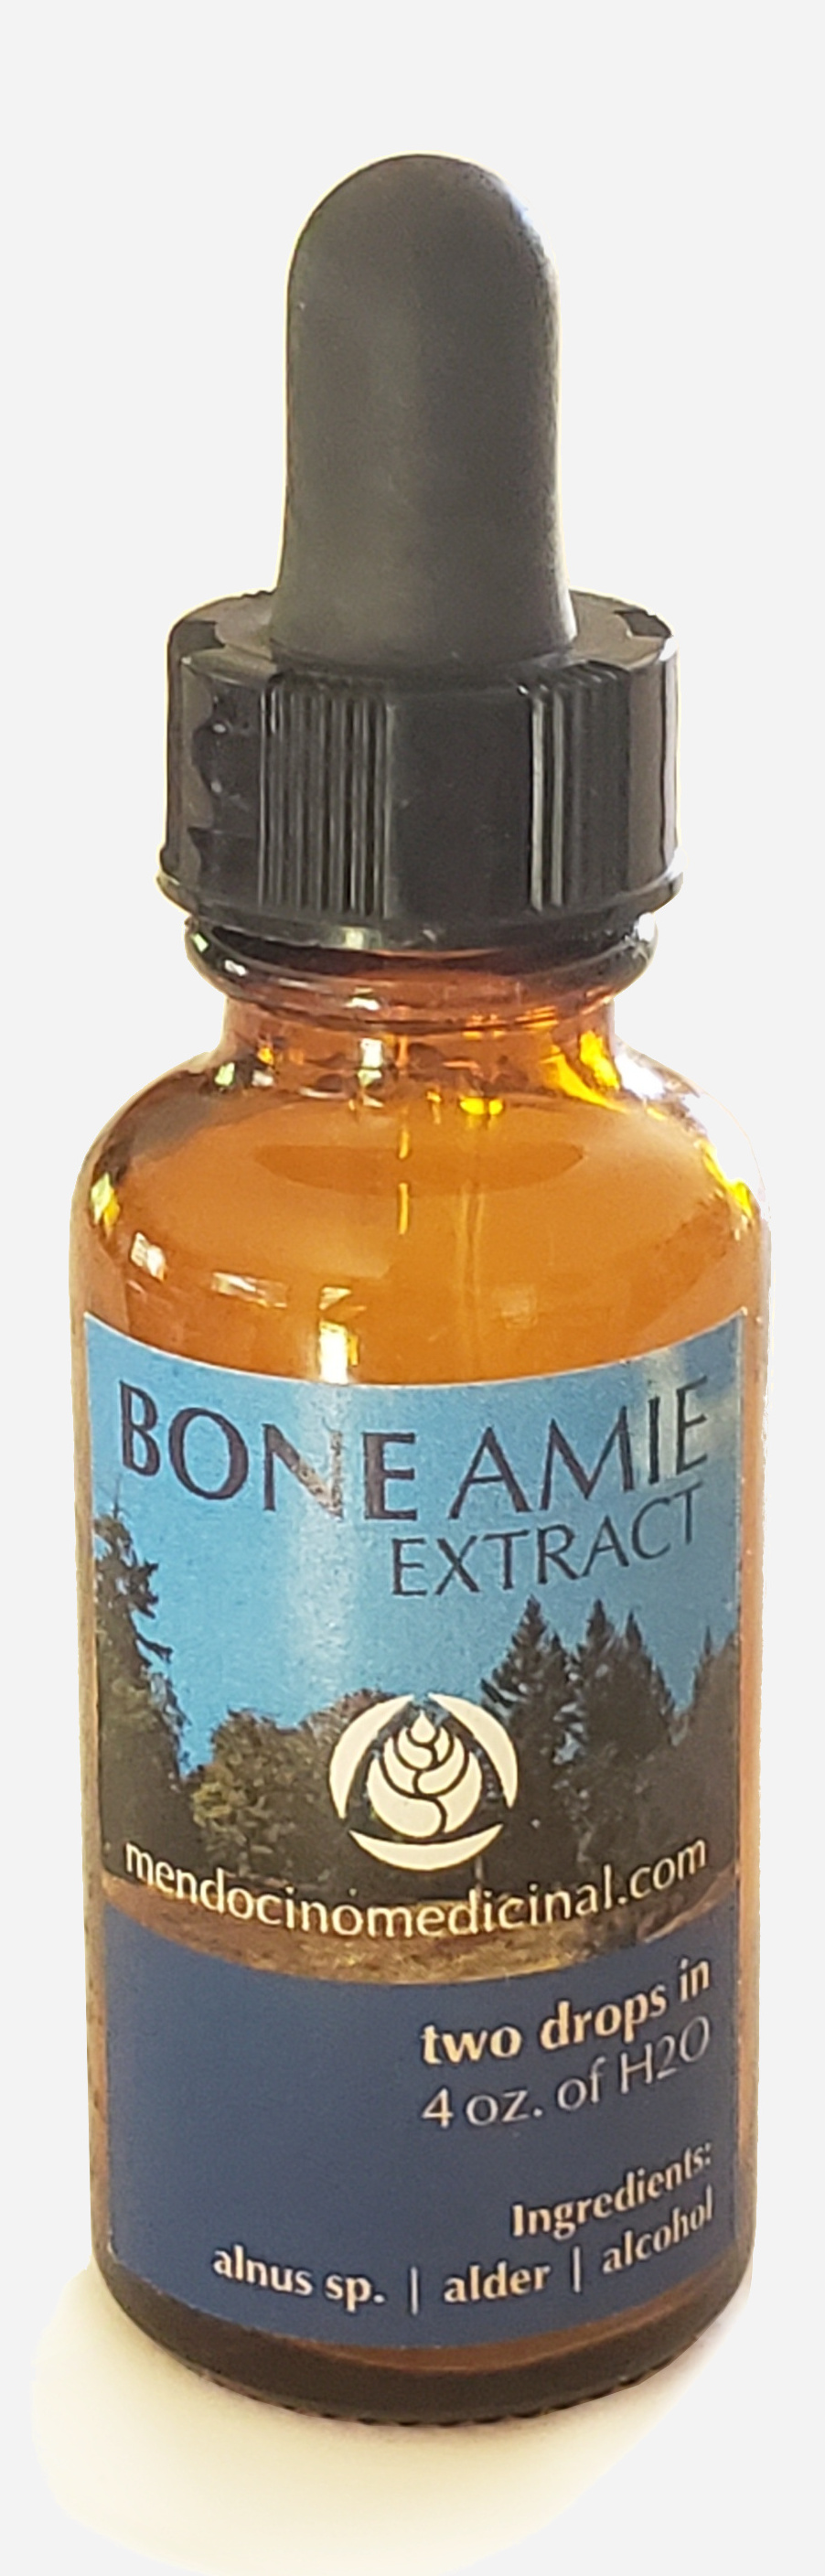 Bone Amie